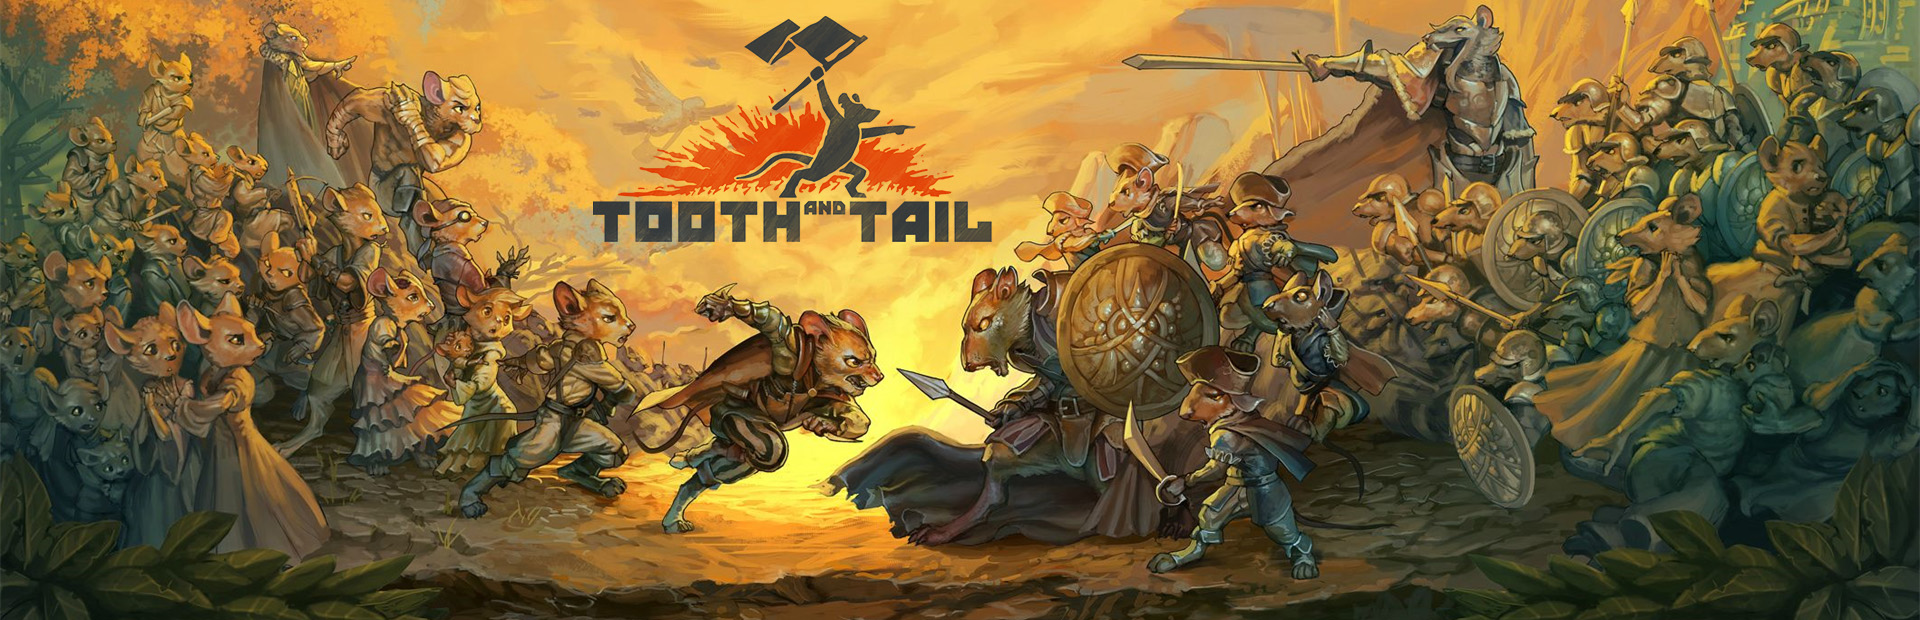 دانلود بازی Tooth and Tail برای PC | گیمباتو